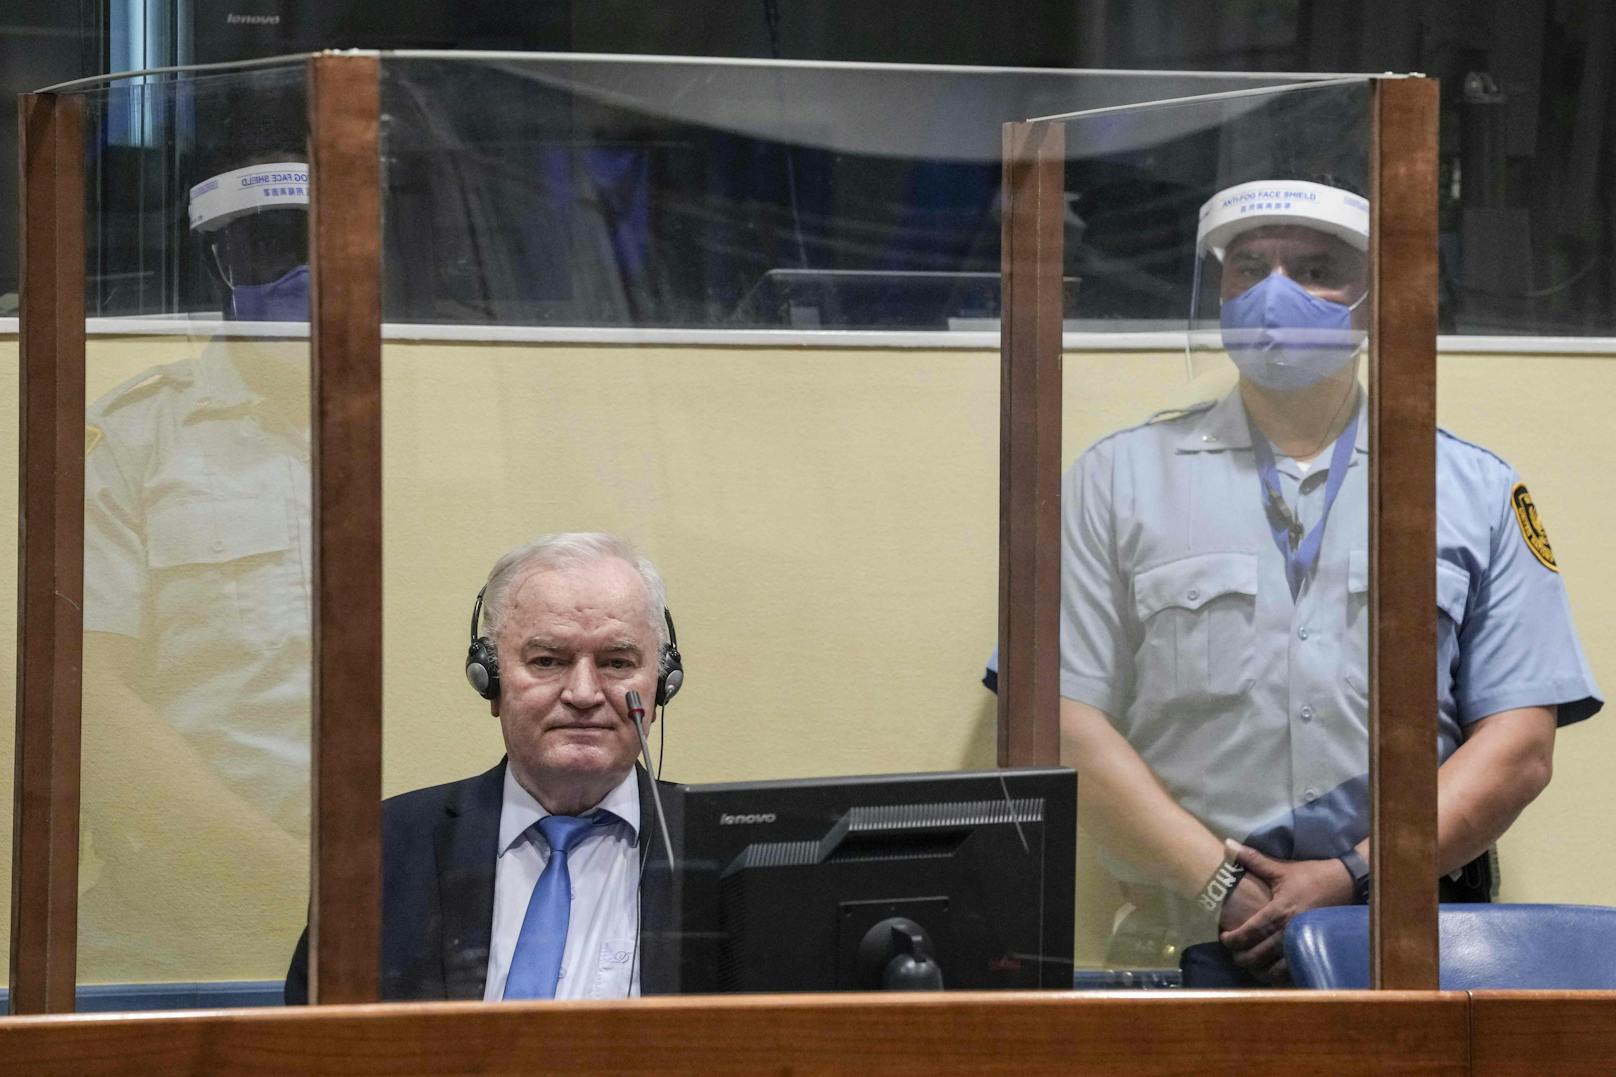 UN-Gericht bestätigt lebenslange Haft für Mladić